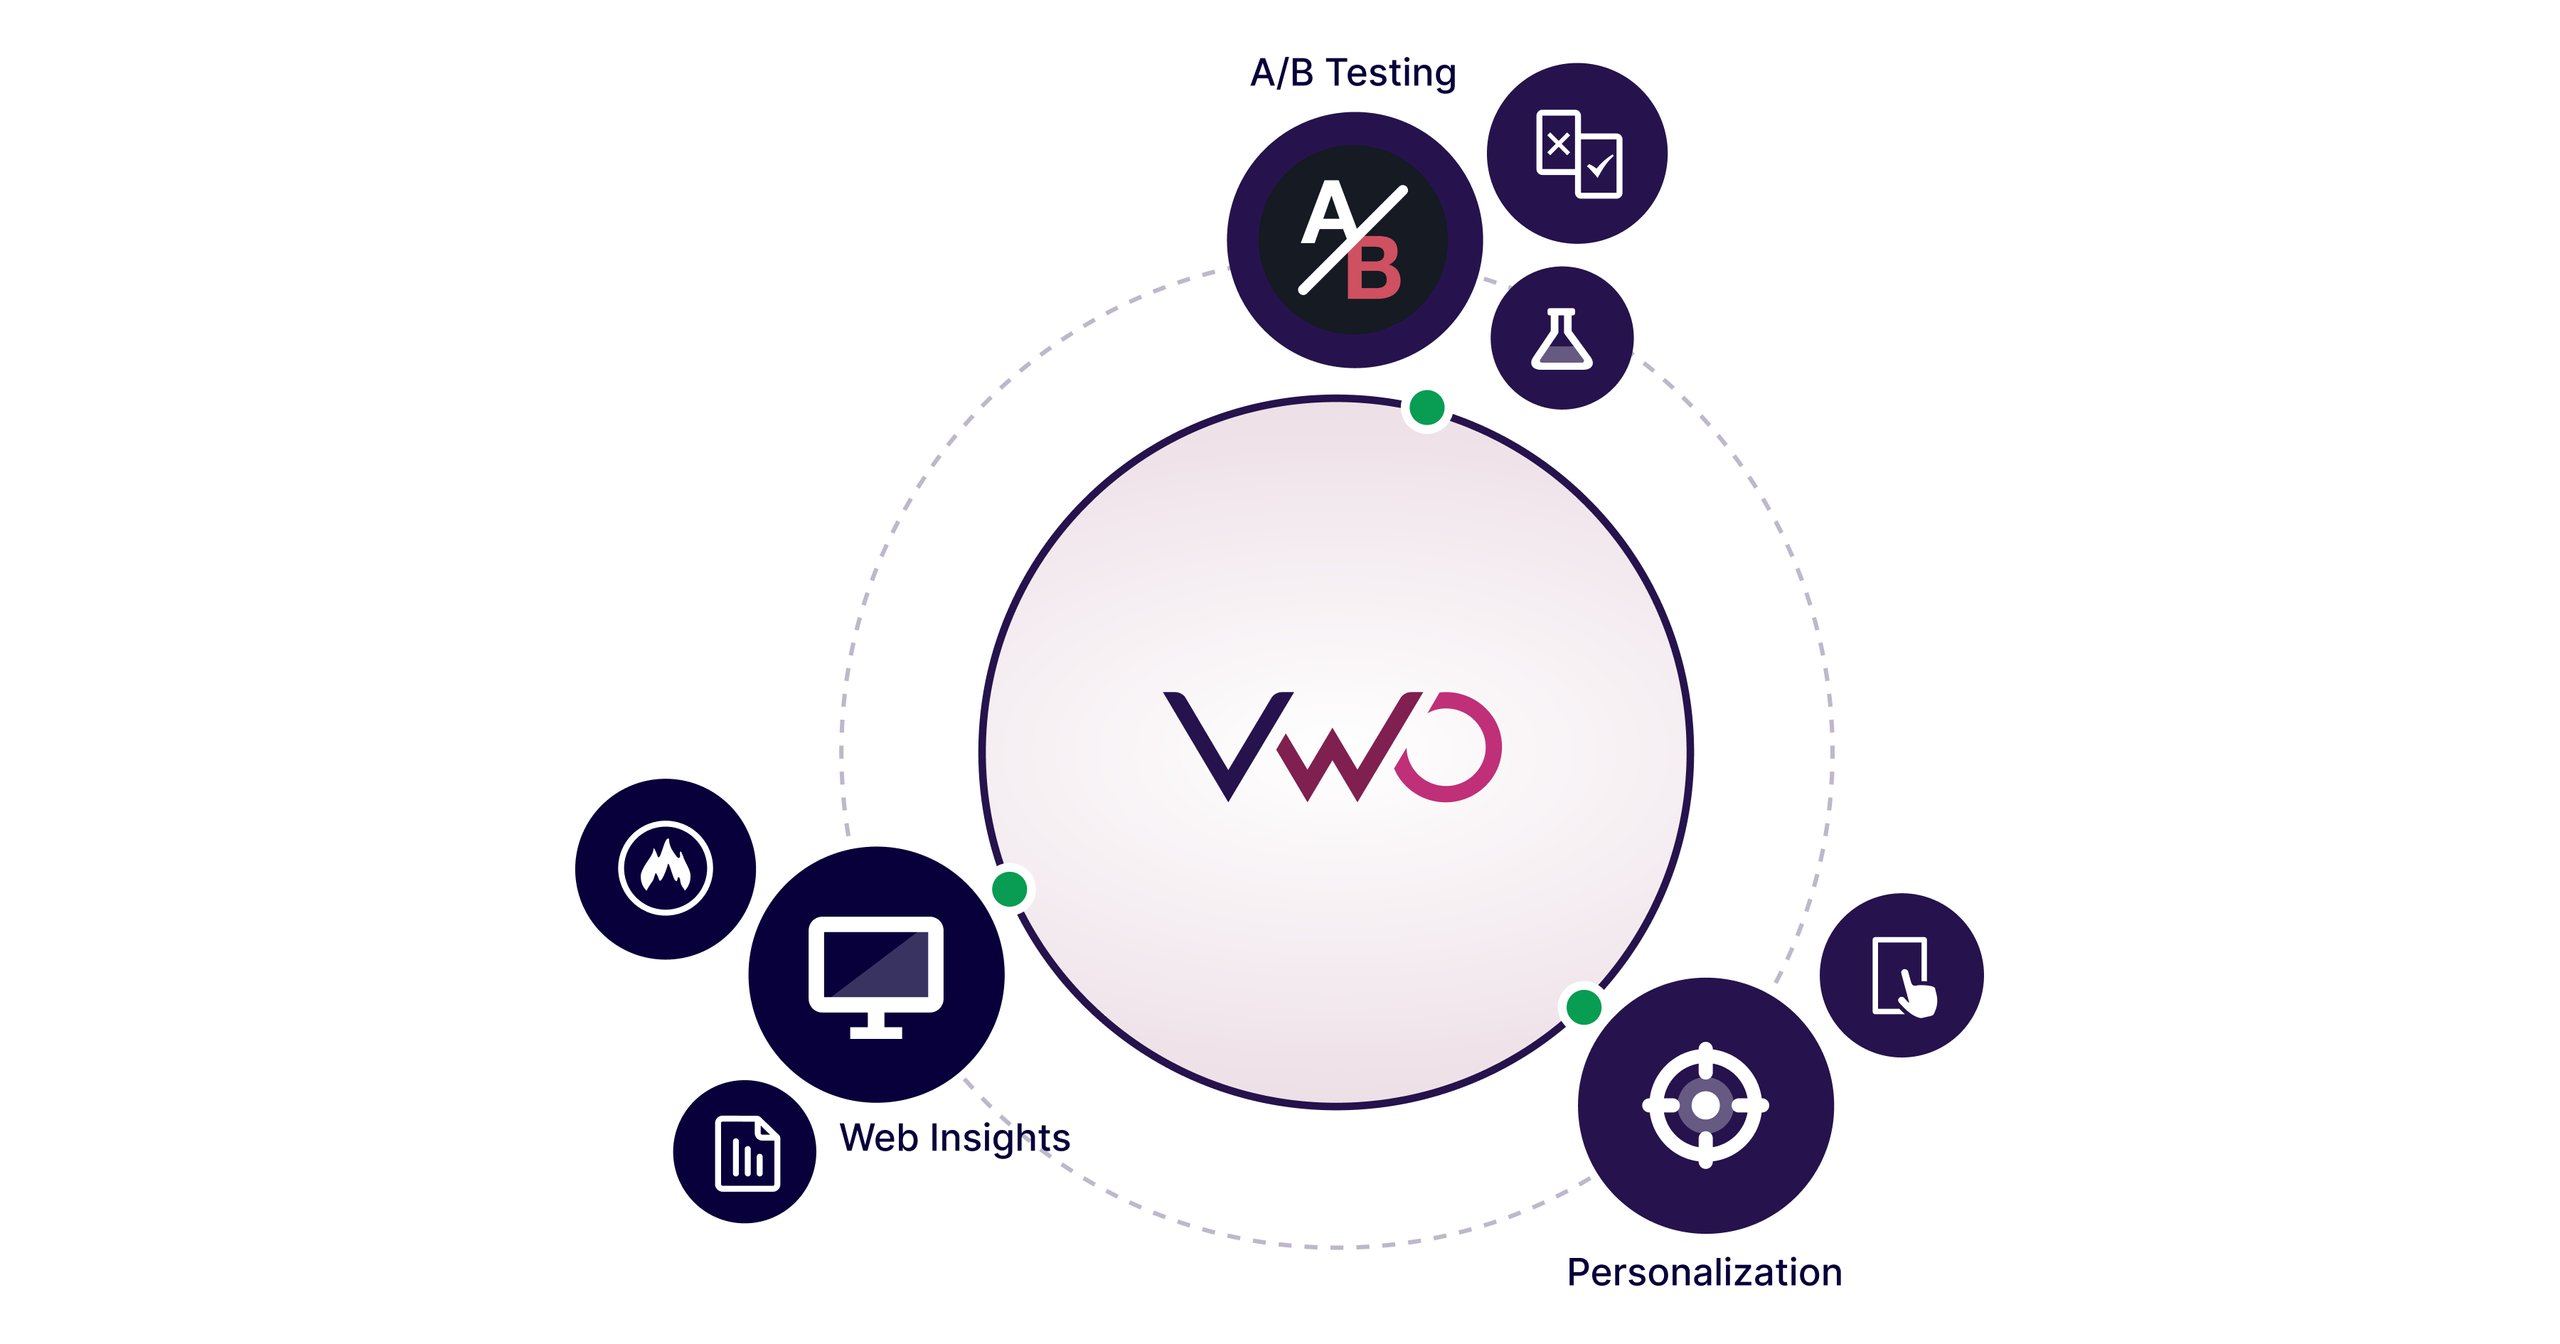 VWO's analytics tools